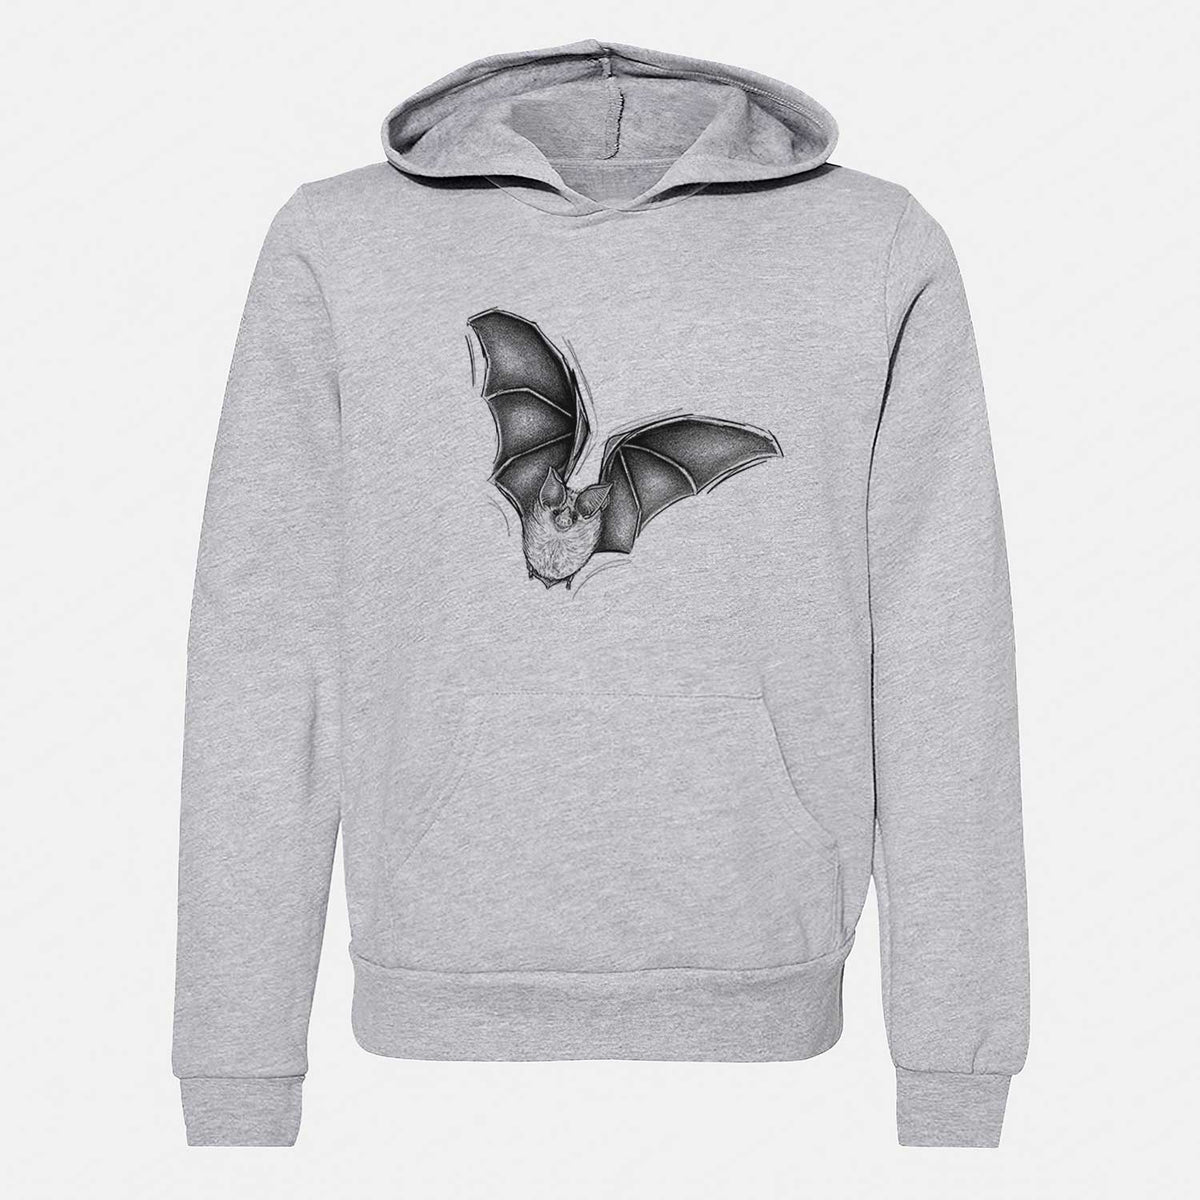 Macrotus californicus - California Leaf-nosed Bat - Youth Hoodie Sweatshirt